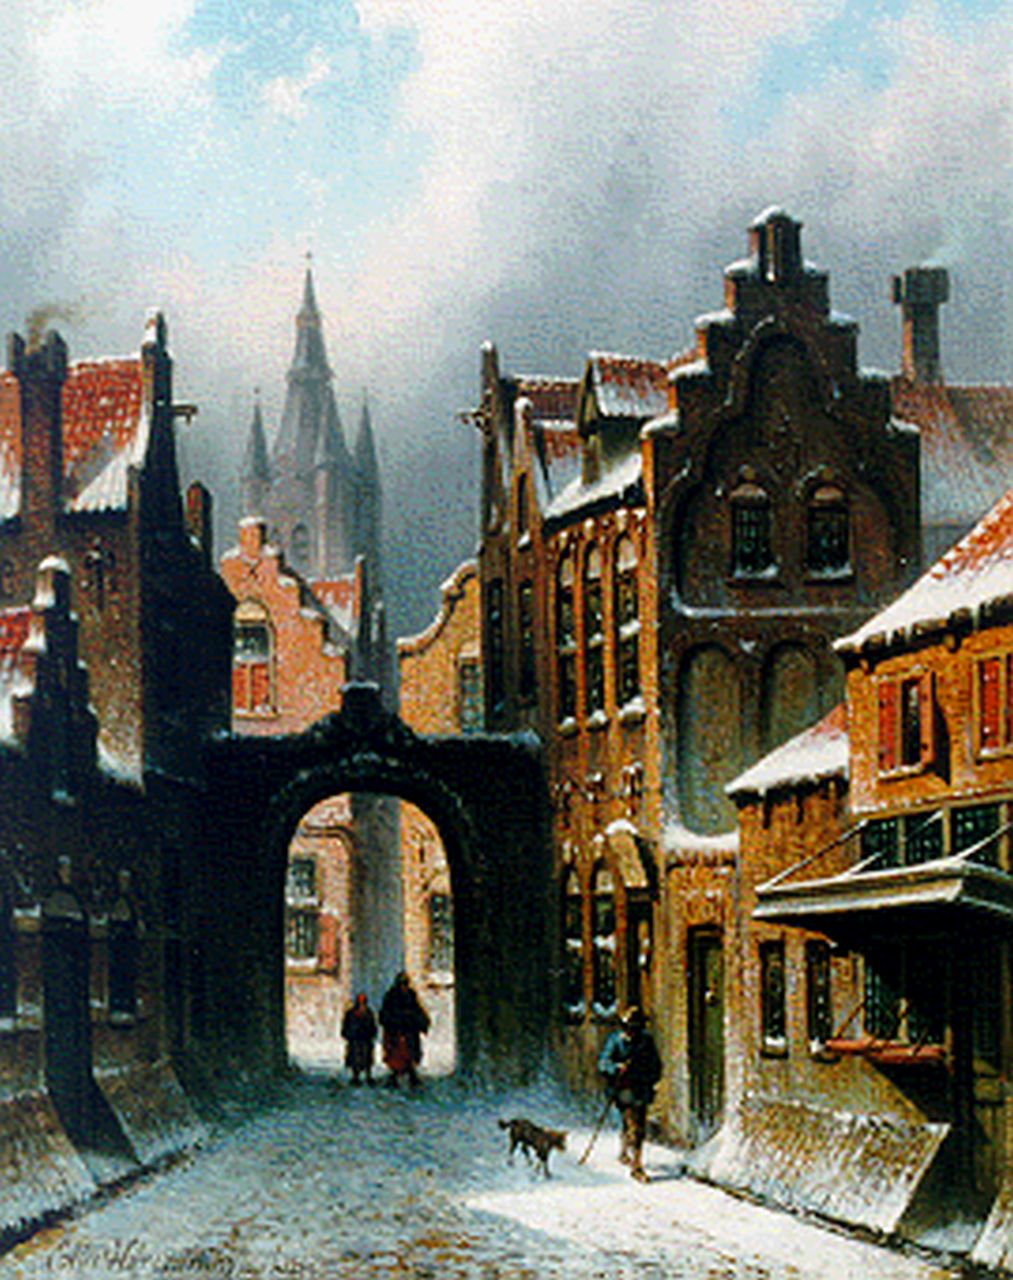 Hilverdink E.A.  | Eduard Alexander Hilverdink, Winters straatje te Delft, met de Oude Kerk op achtergrond, olieverf op paneel 29,6 x 23,5 cm, gesigneerd linksonder en gedateerd juli 1869